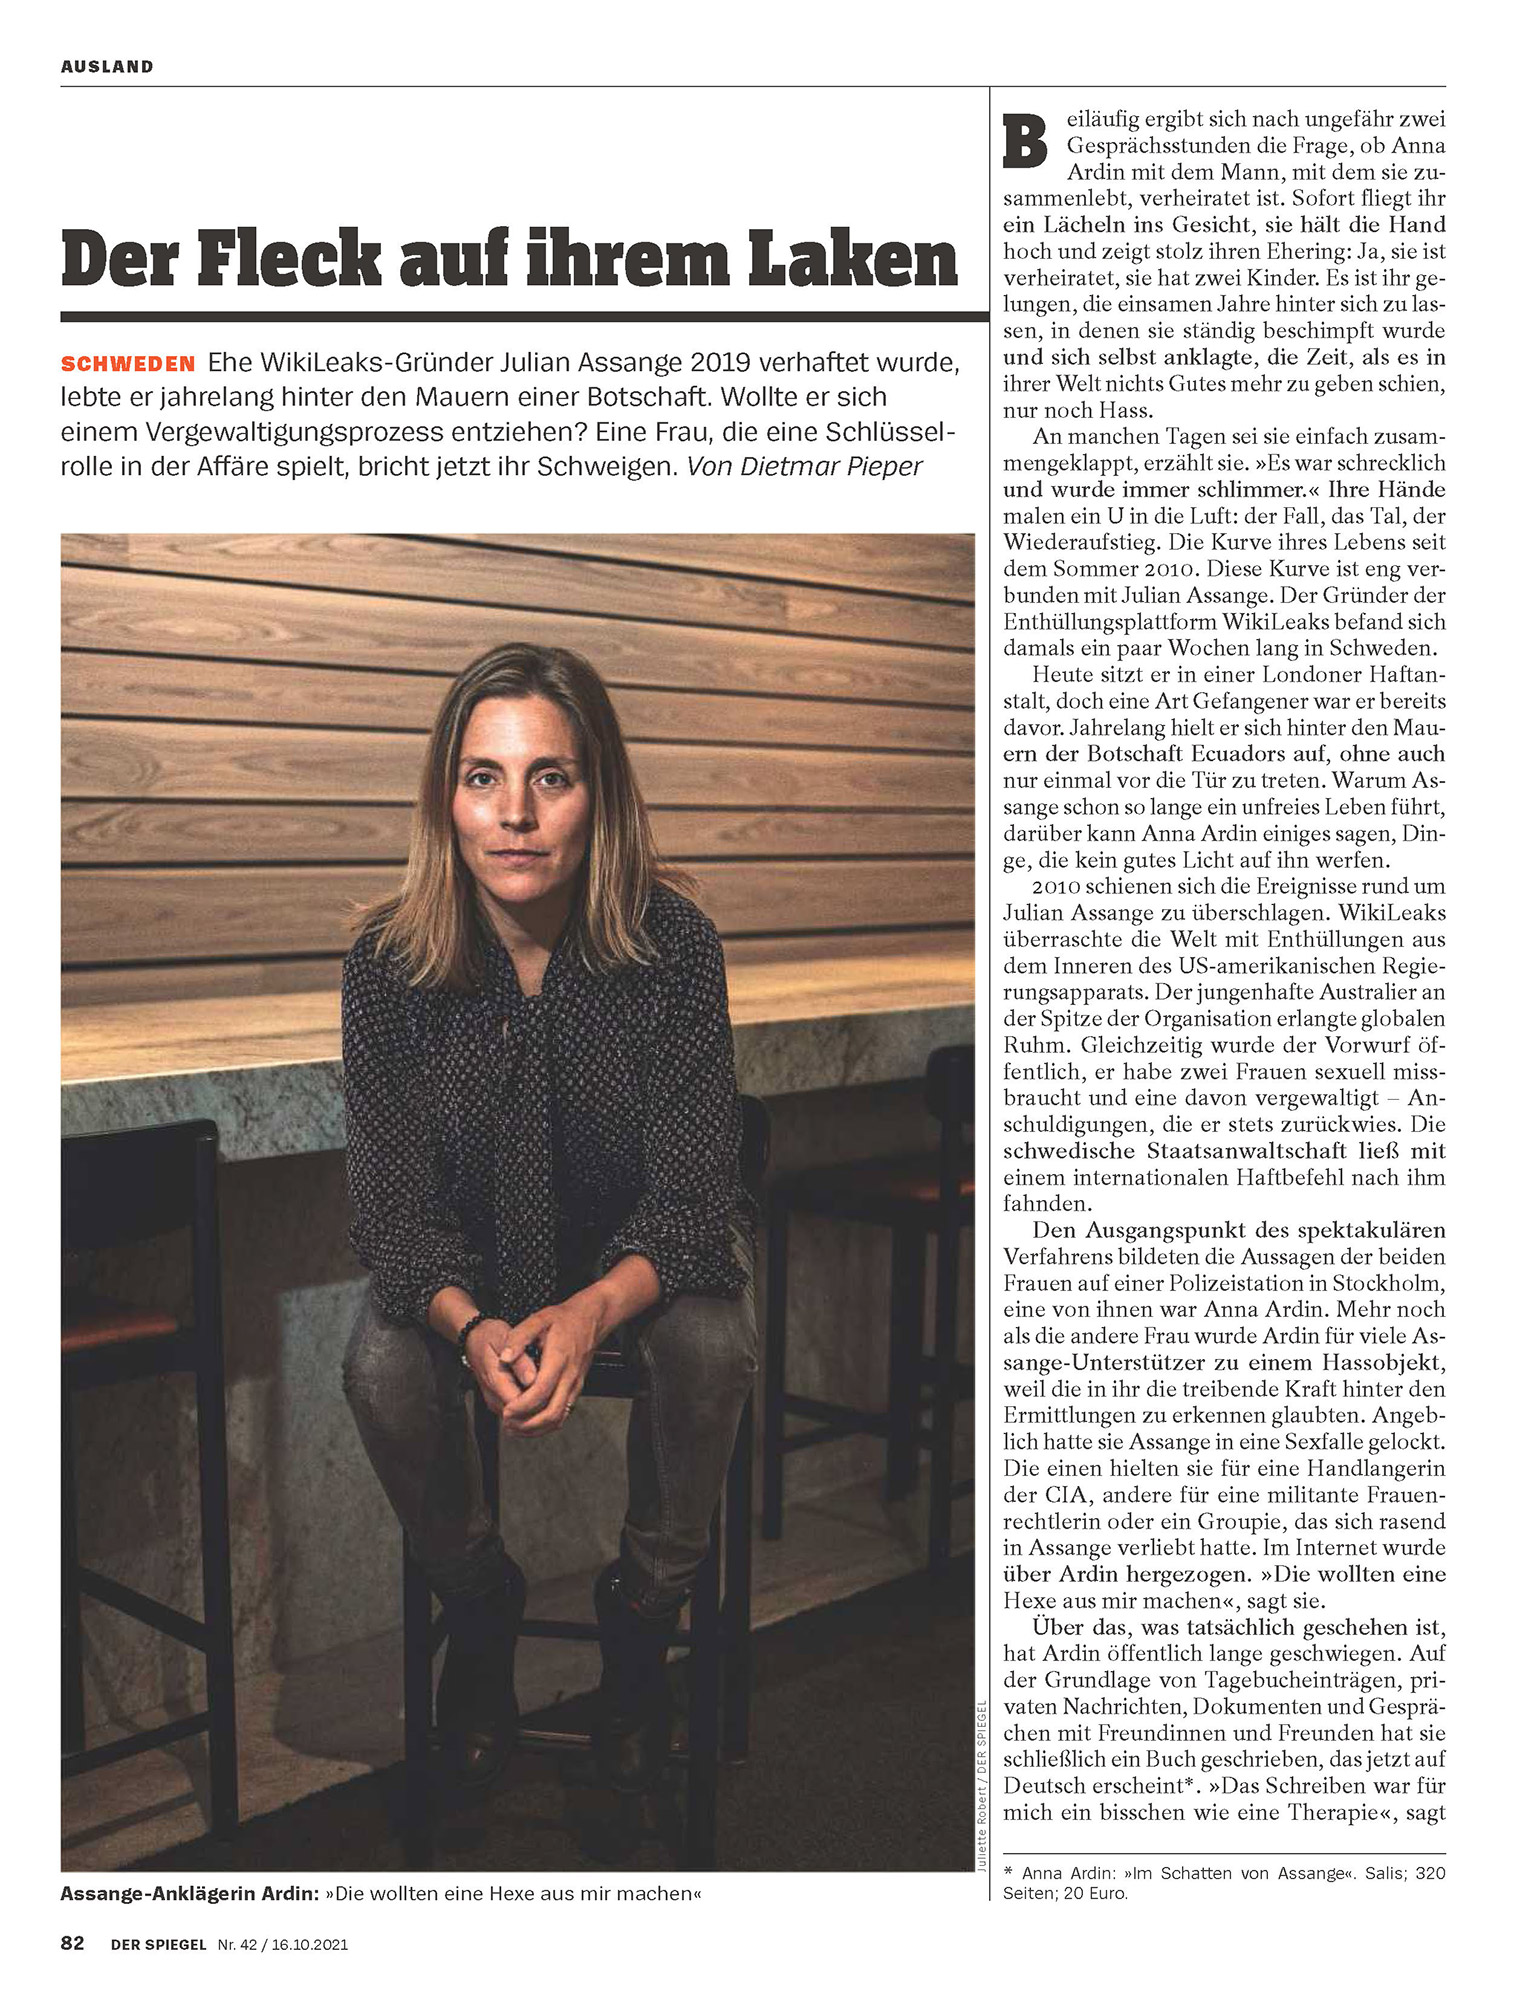 Der-Spiegel_16.10.21-p82